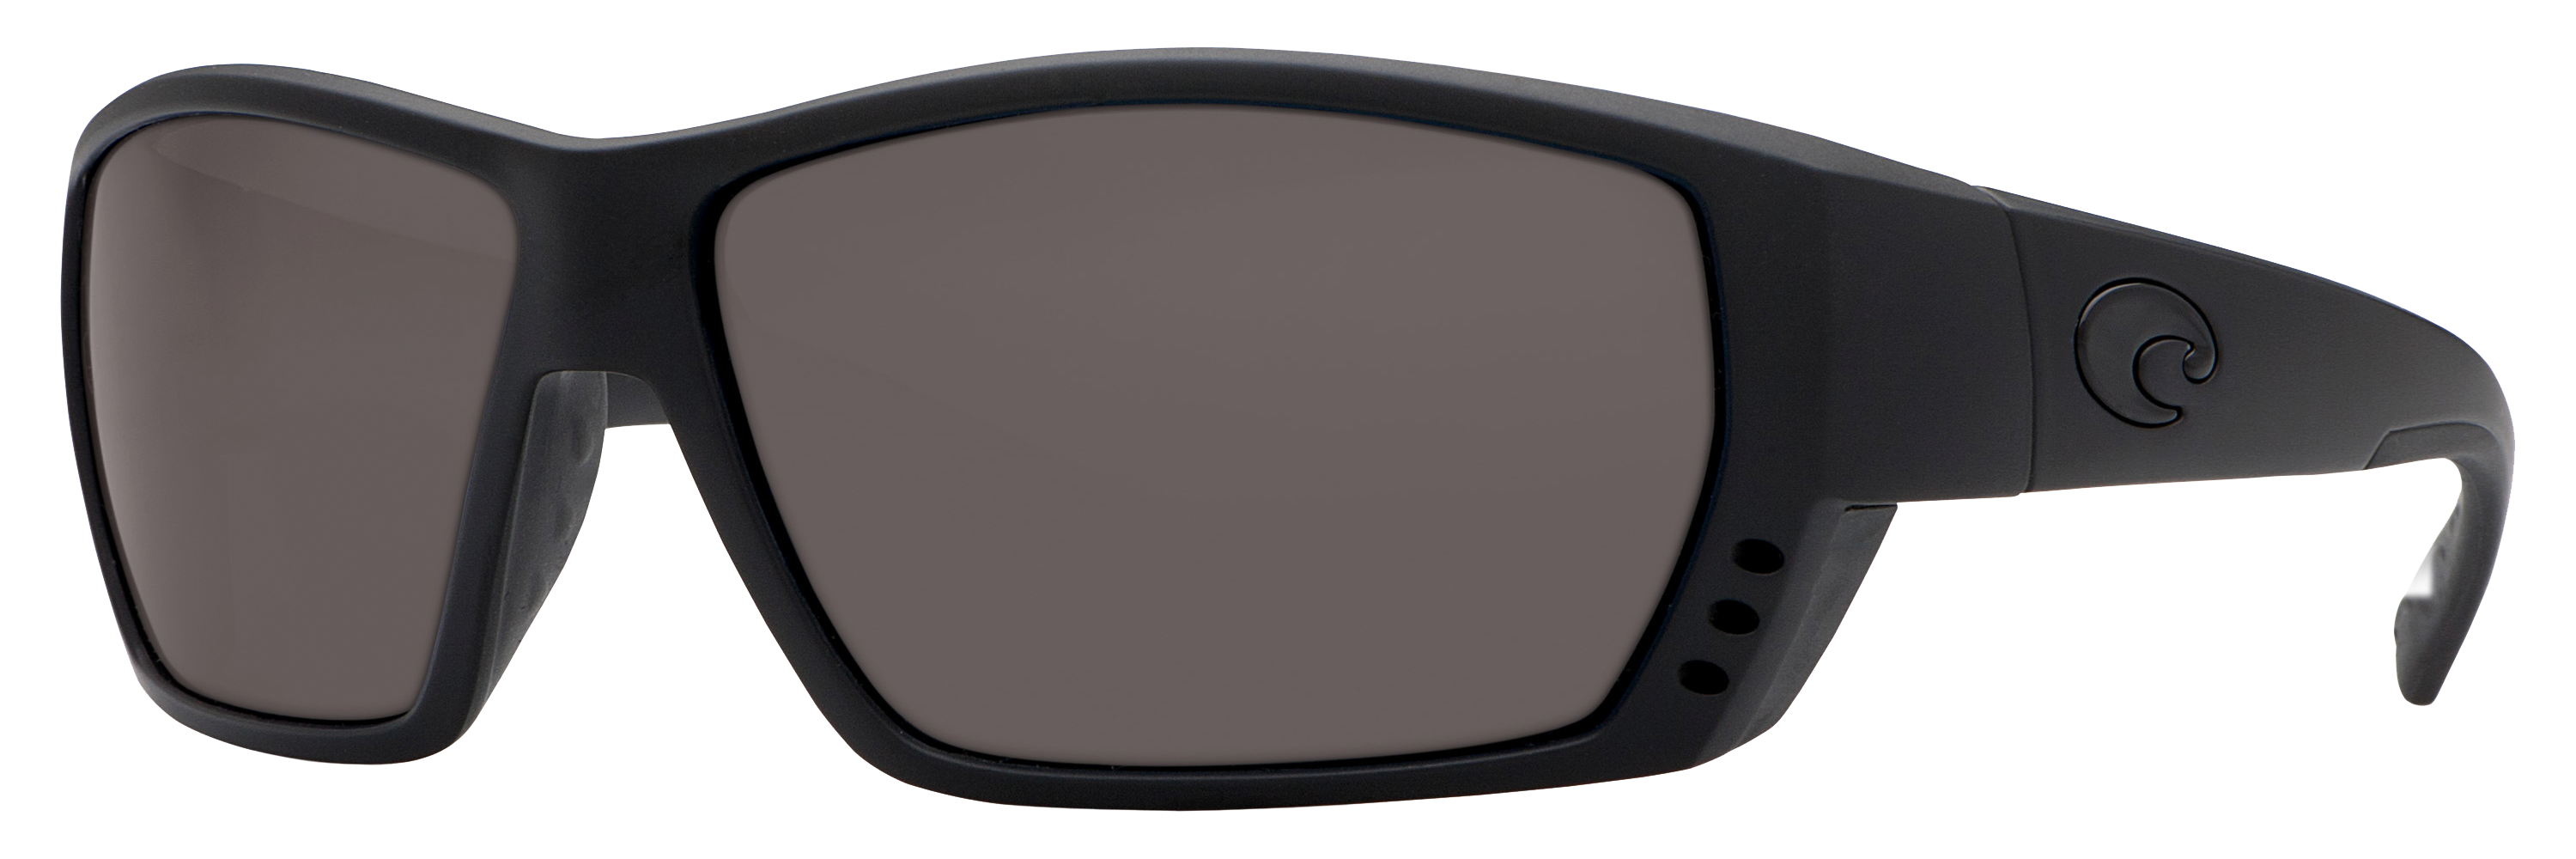 Costa Del Mar Tuna Alley 580P Polarized Sunglasses - Blackout/Gray - Standard